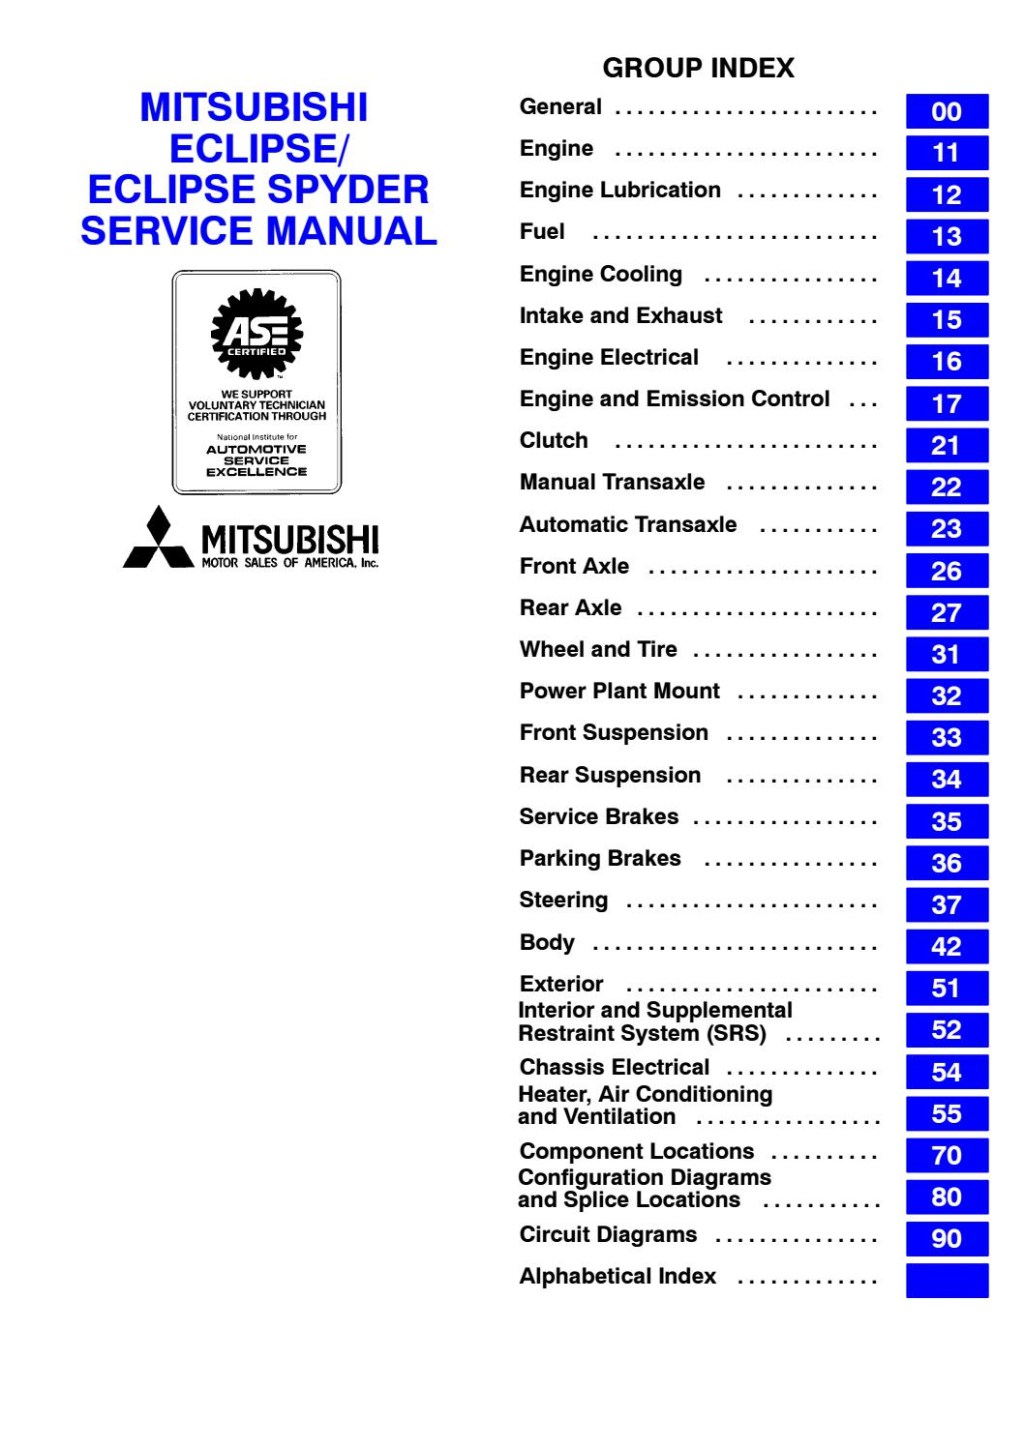 Picture of: Mitsubishi Eclipse Service Repair Manual by gu – Issuu